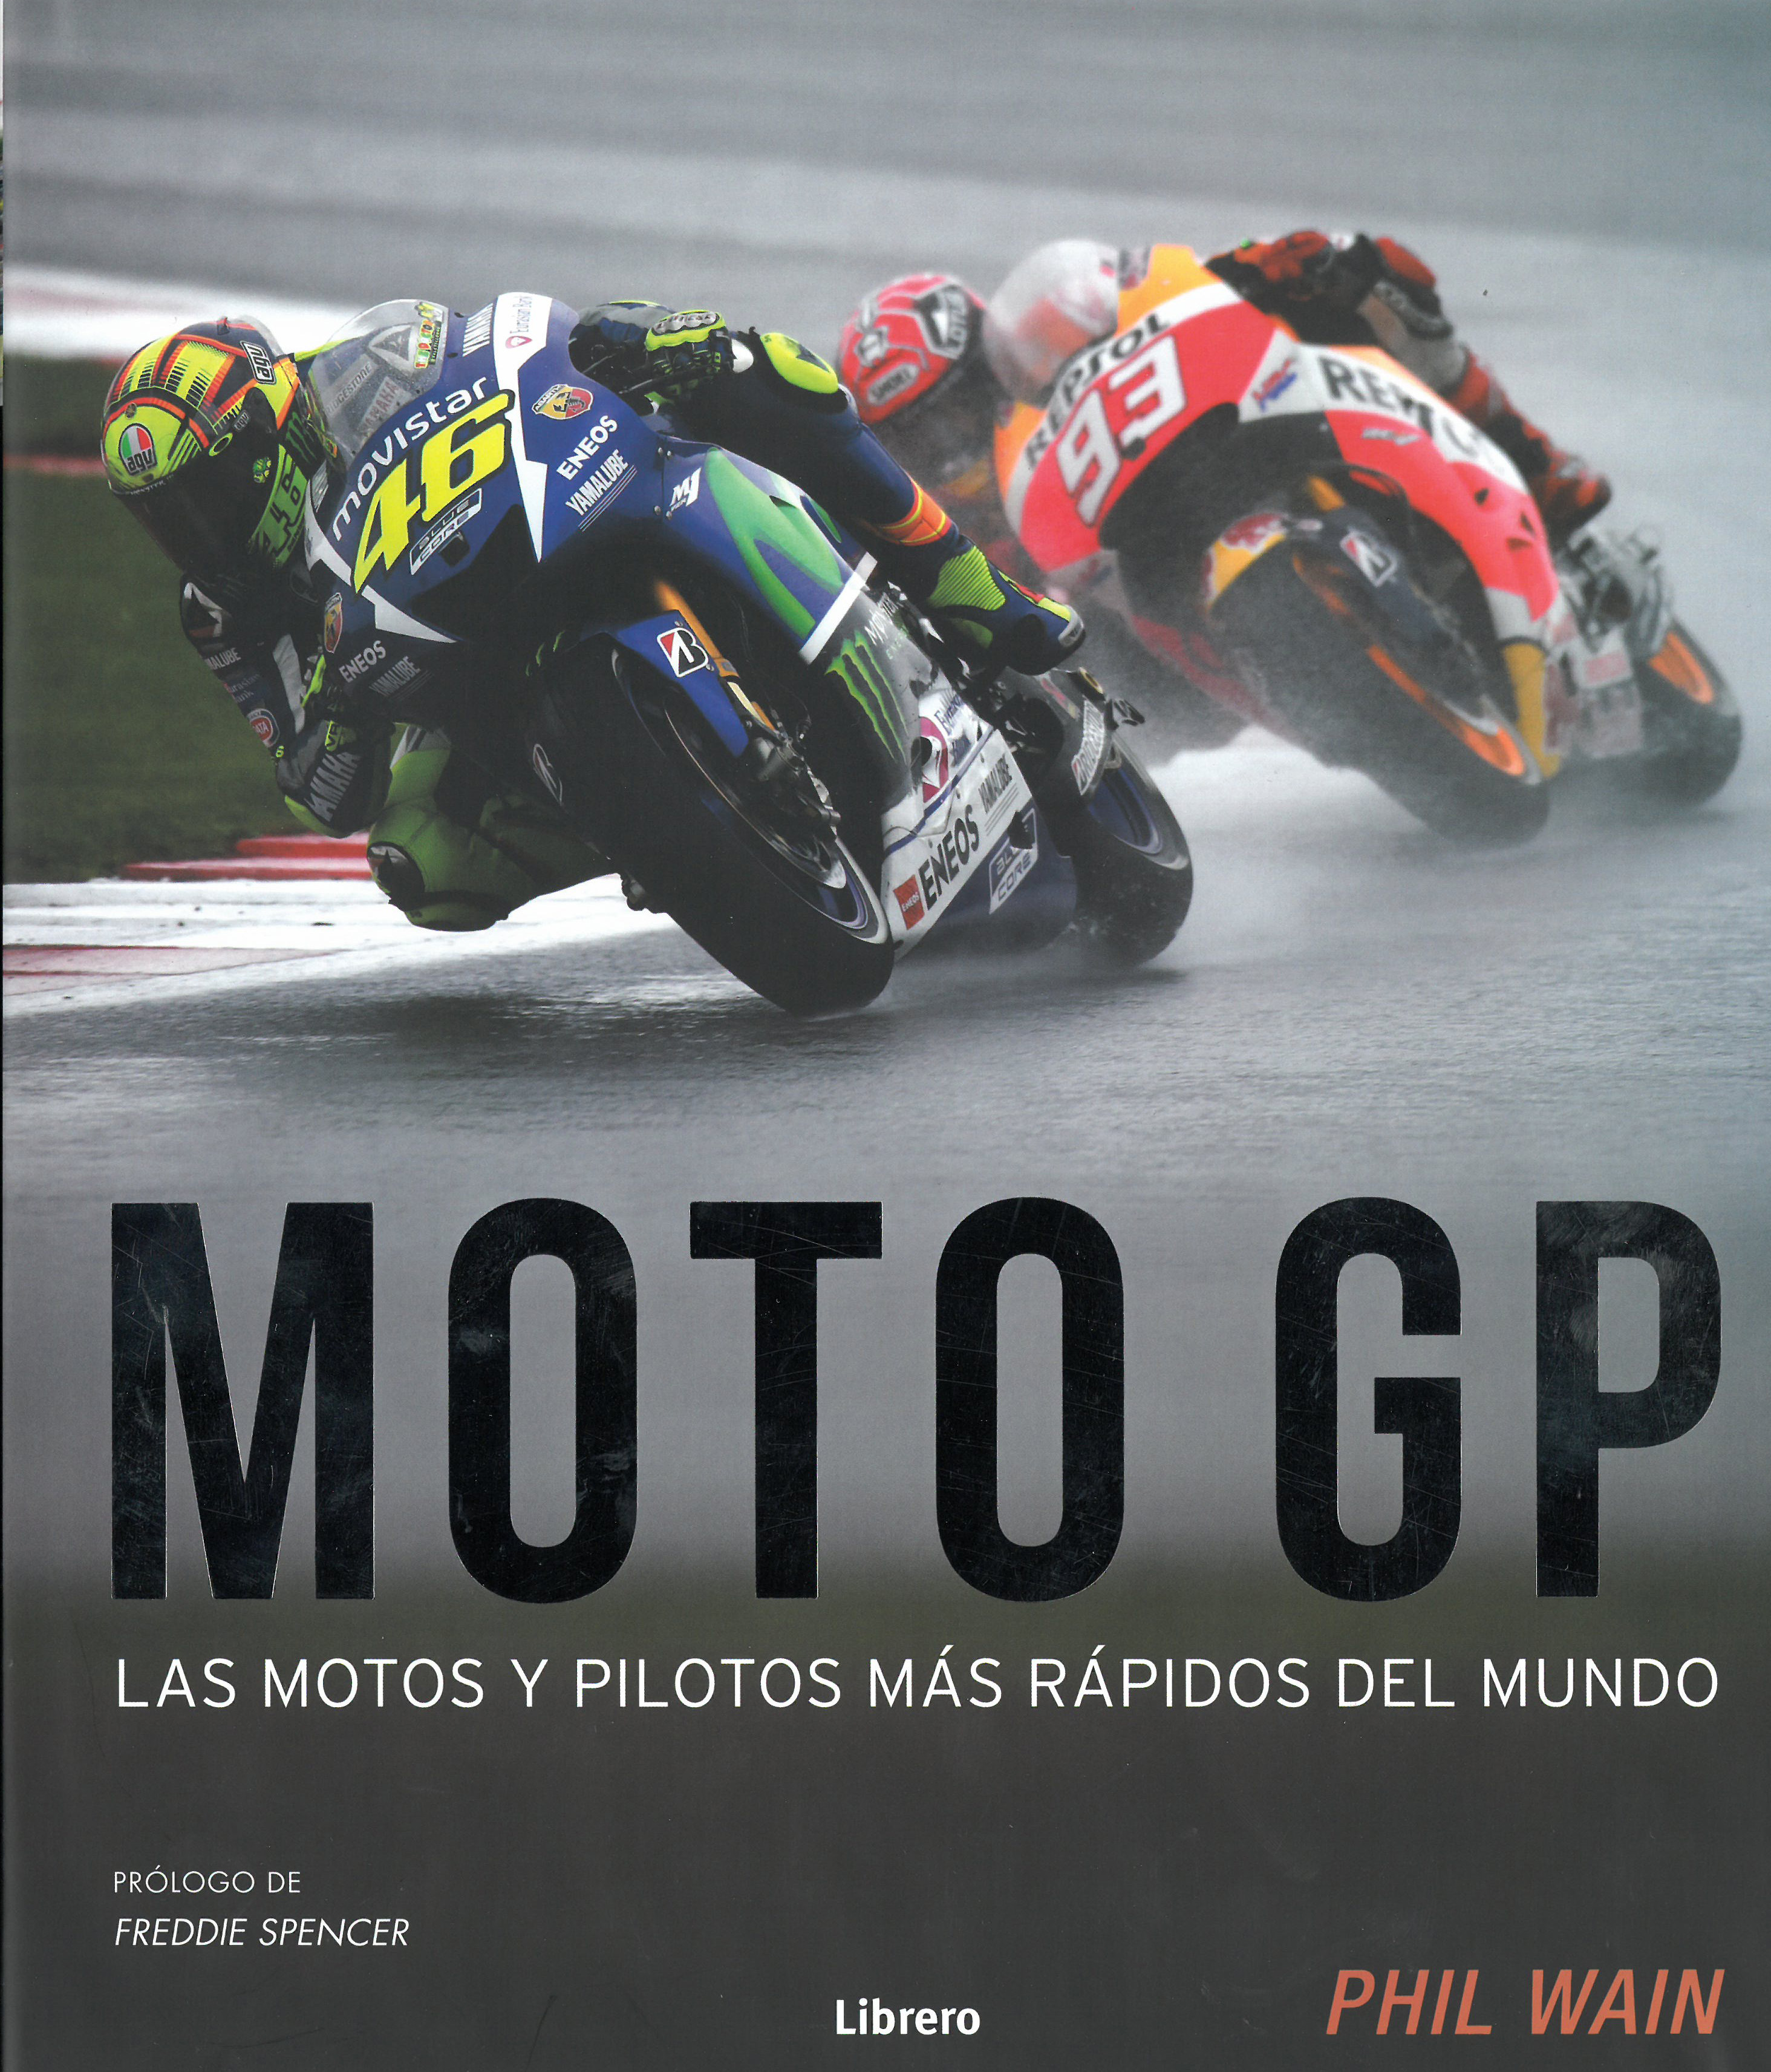 
            Moto GP